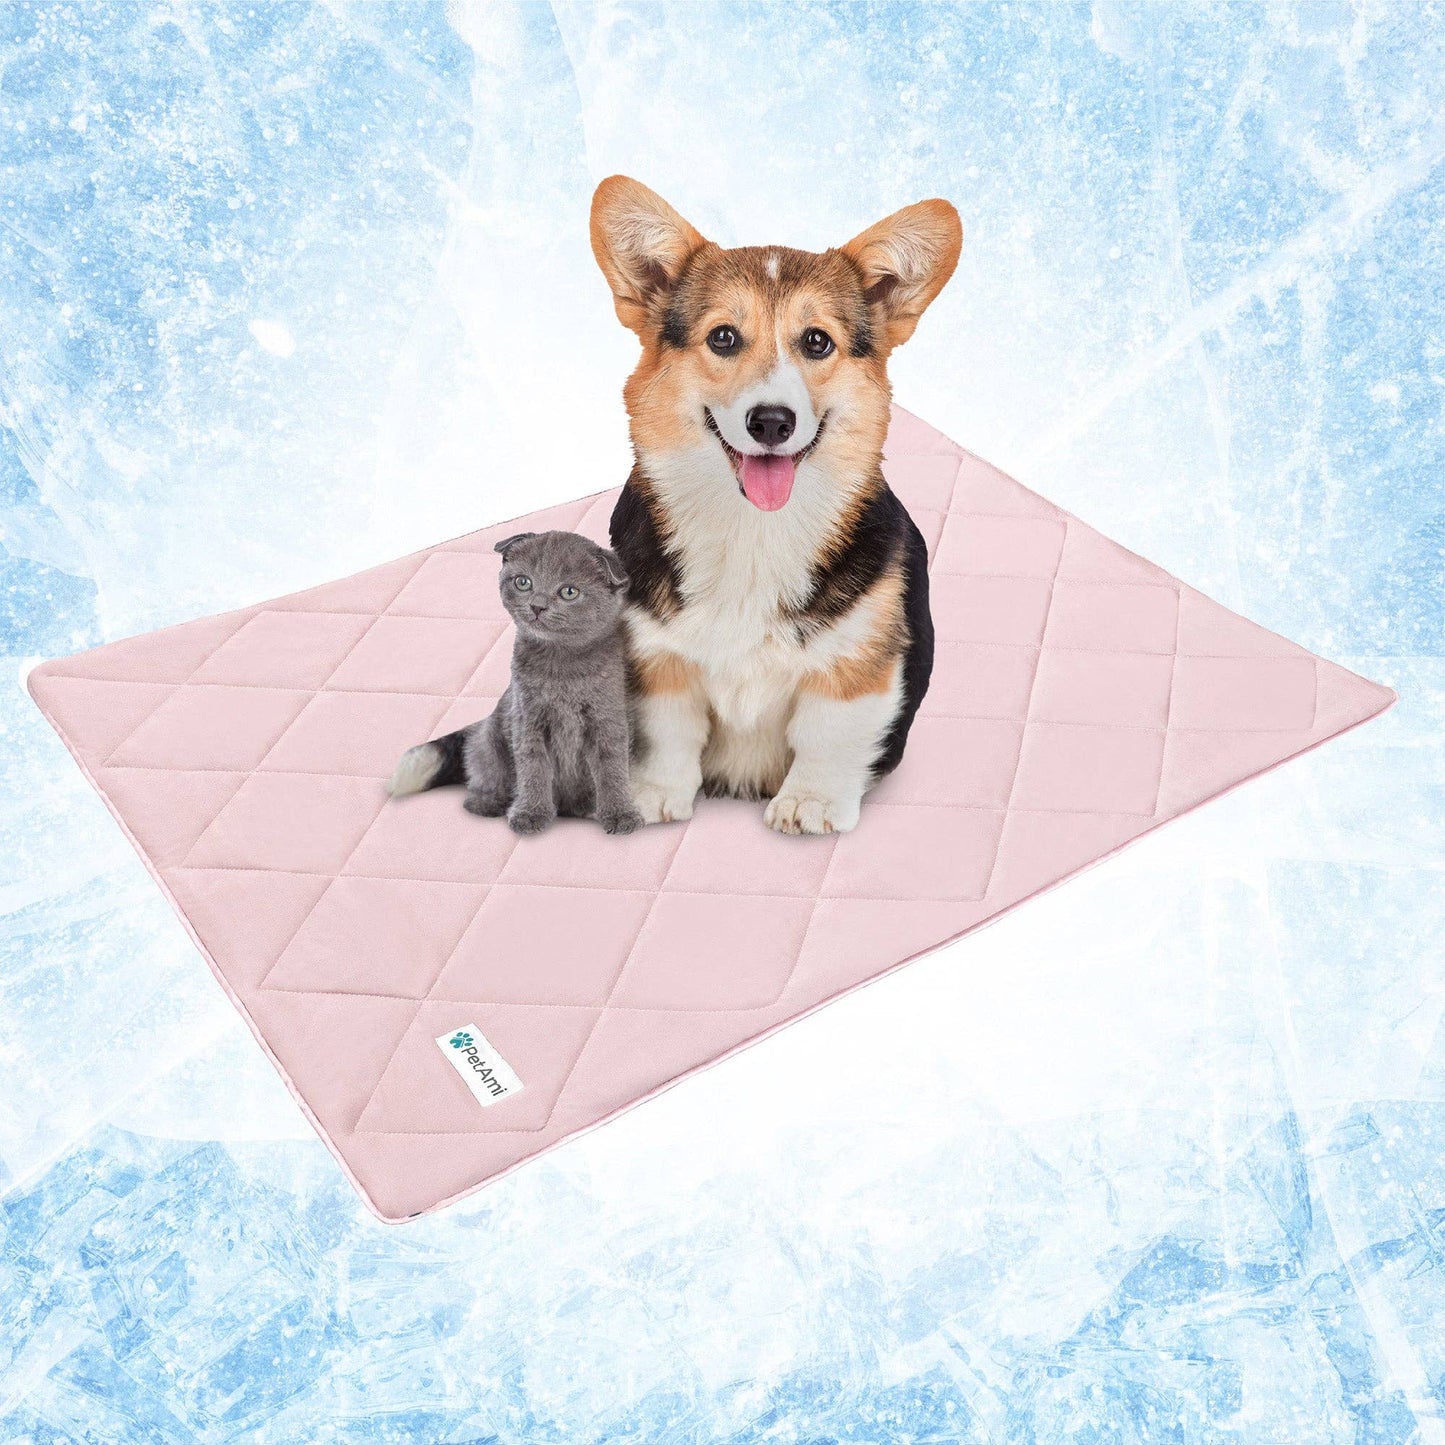 Cooling Pet Dog Blanket